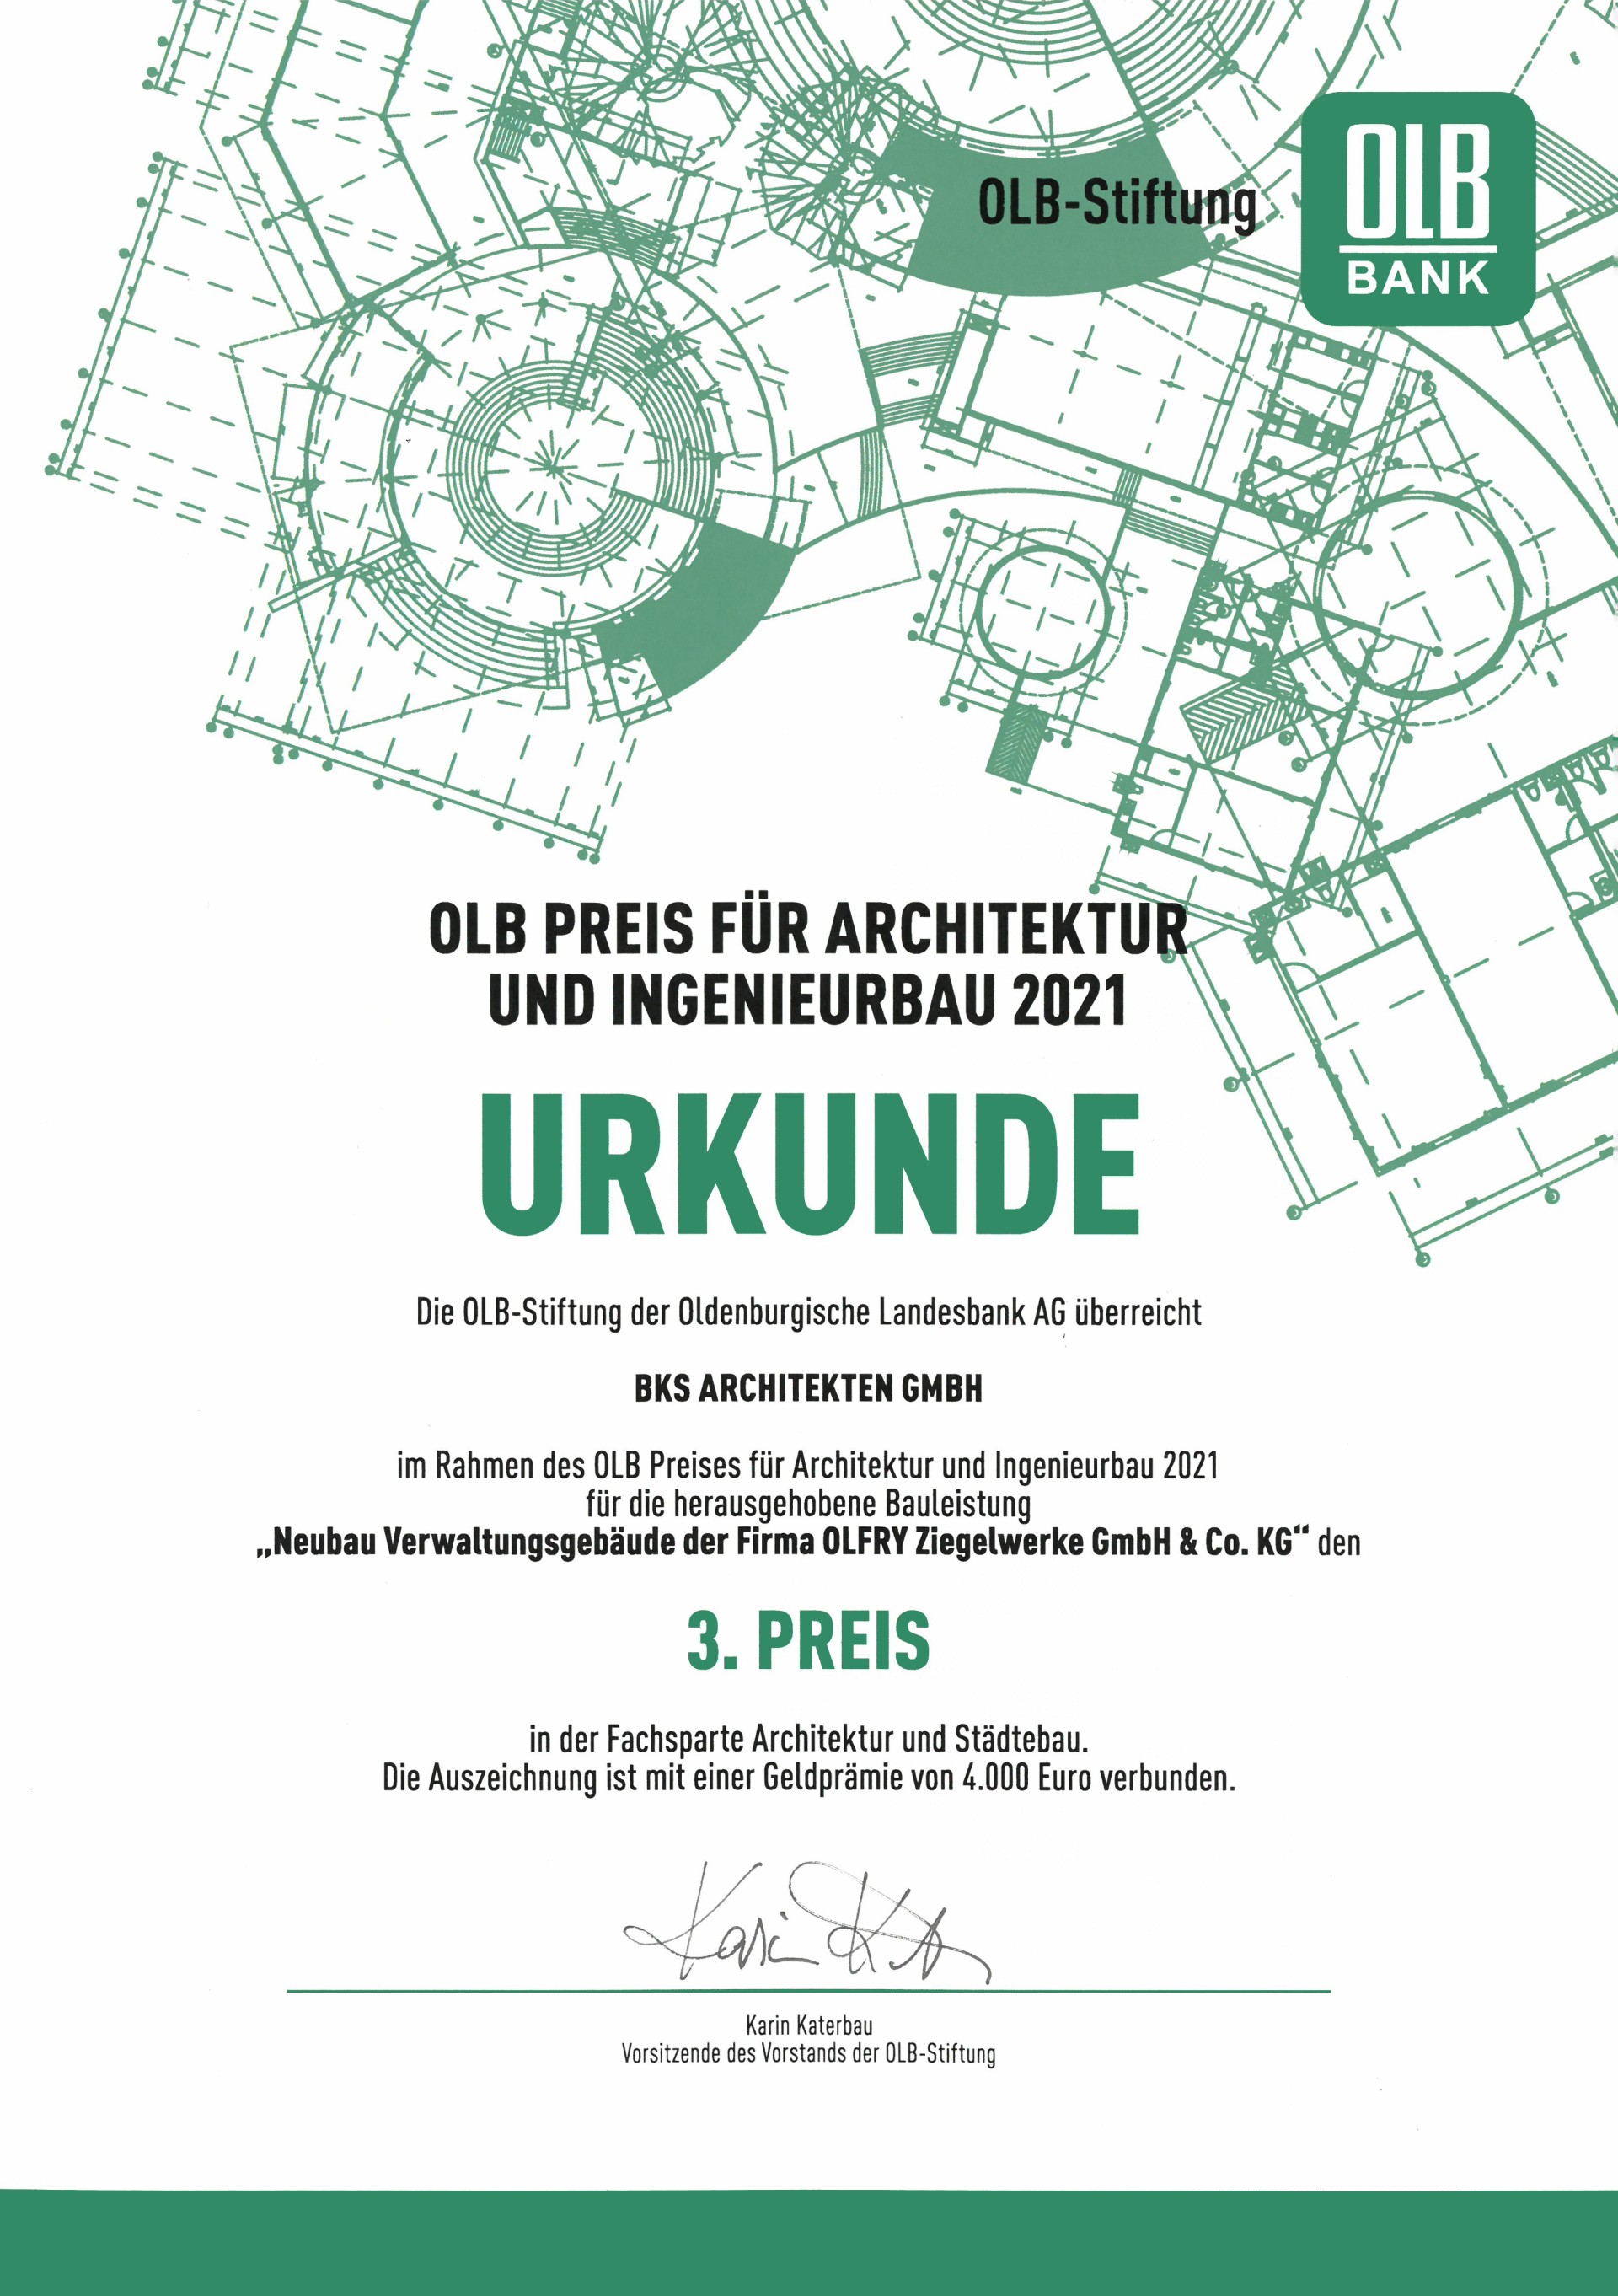 3. OLB Preis für Architektur & Ingenieurbau 2021